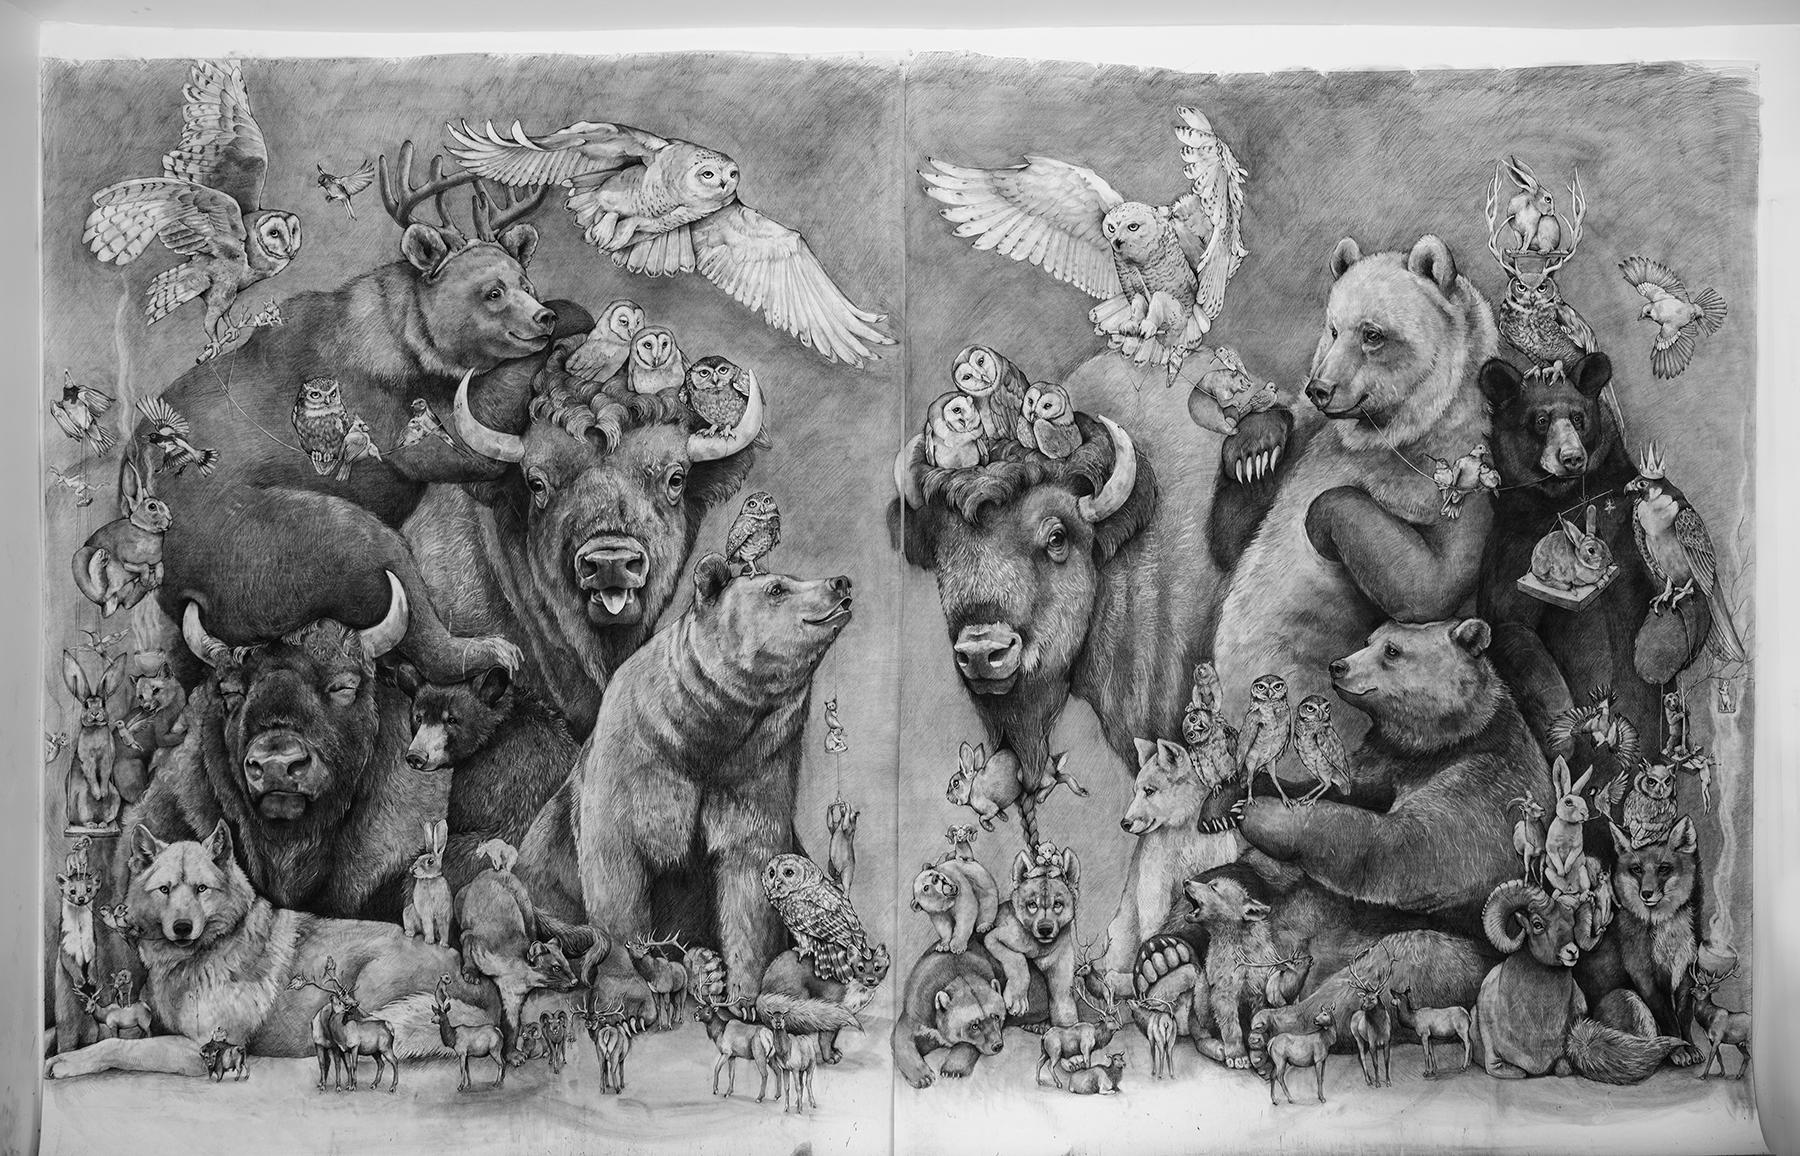 Adonna Khare Animal Art - Bison and Bears